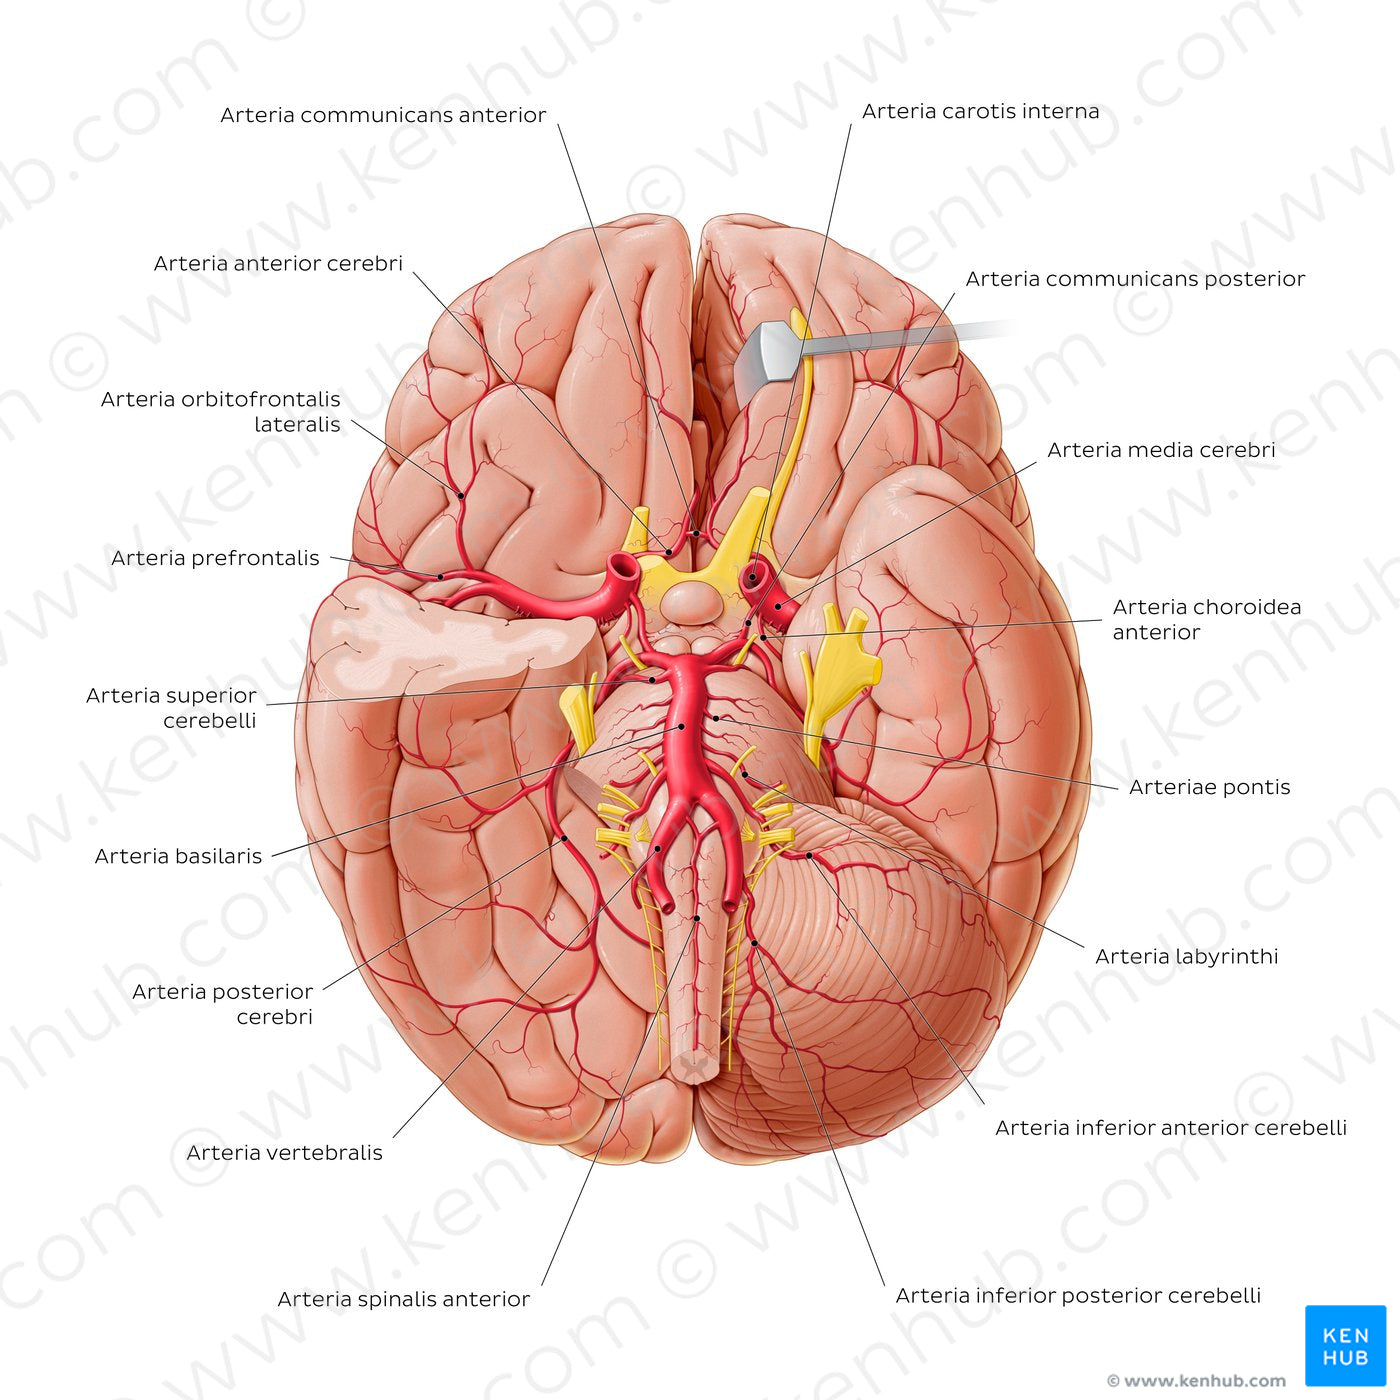 Arteries of the brain II (Latin)